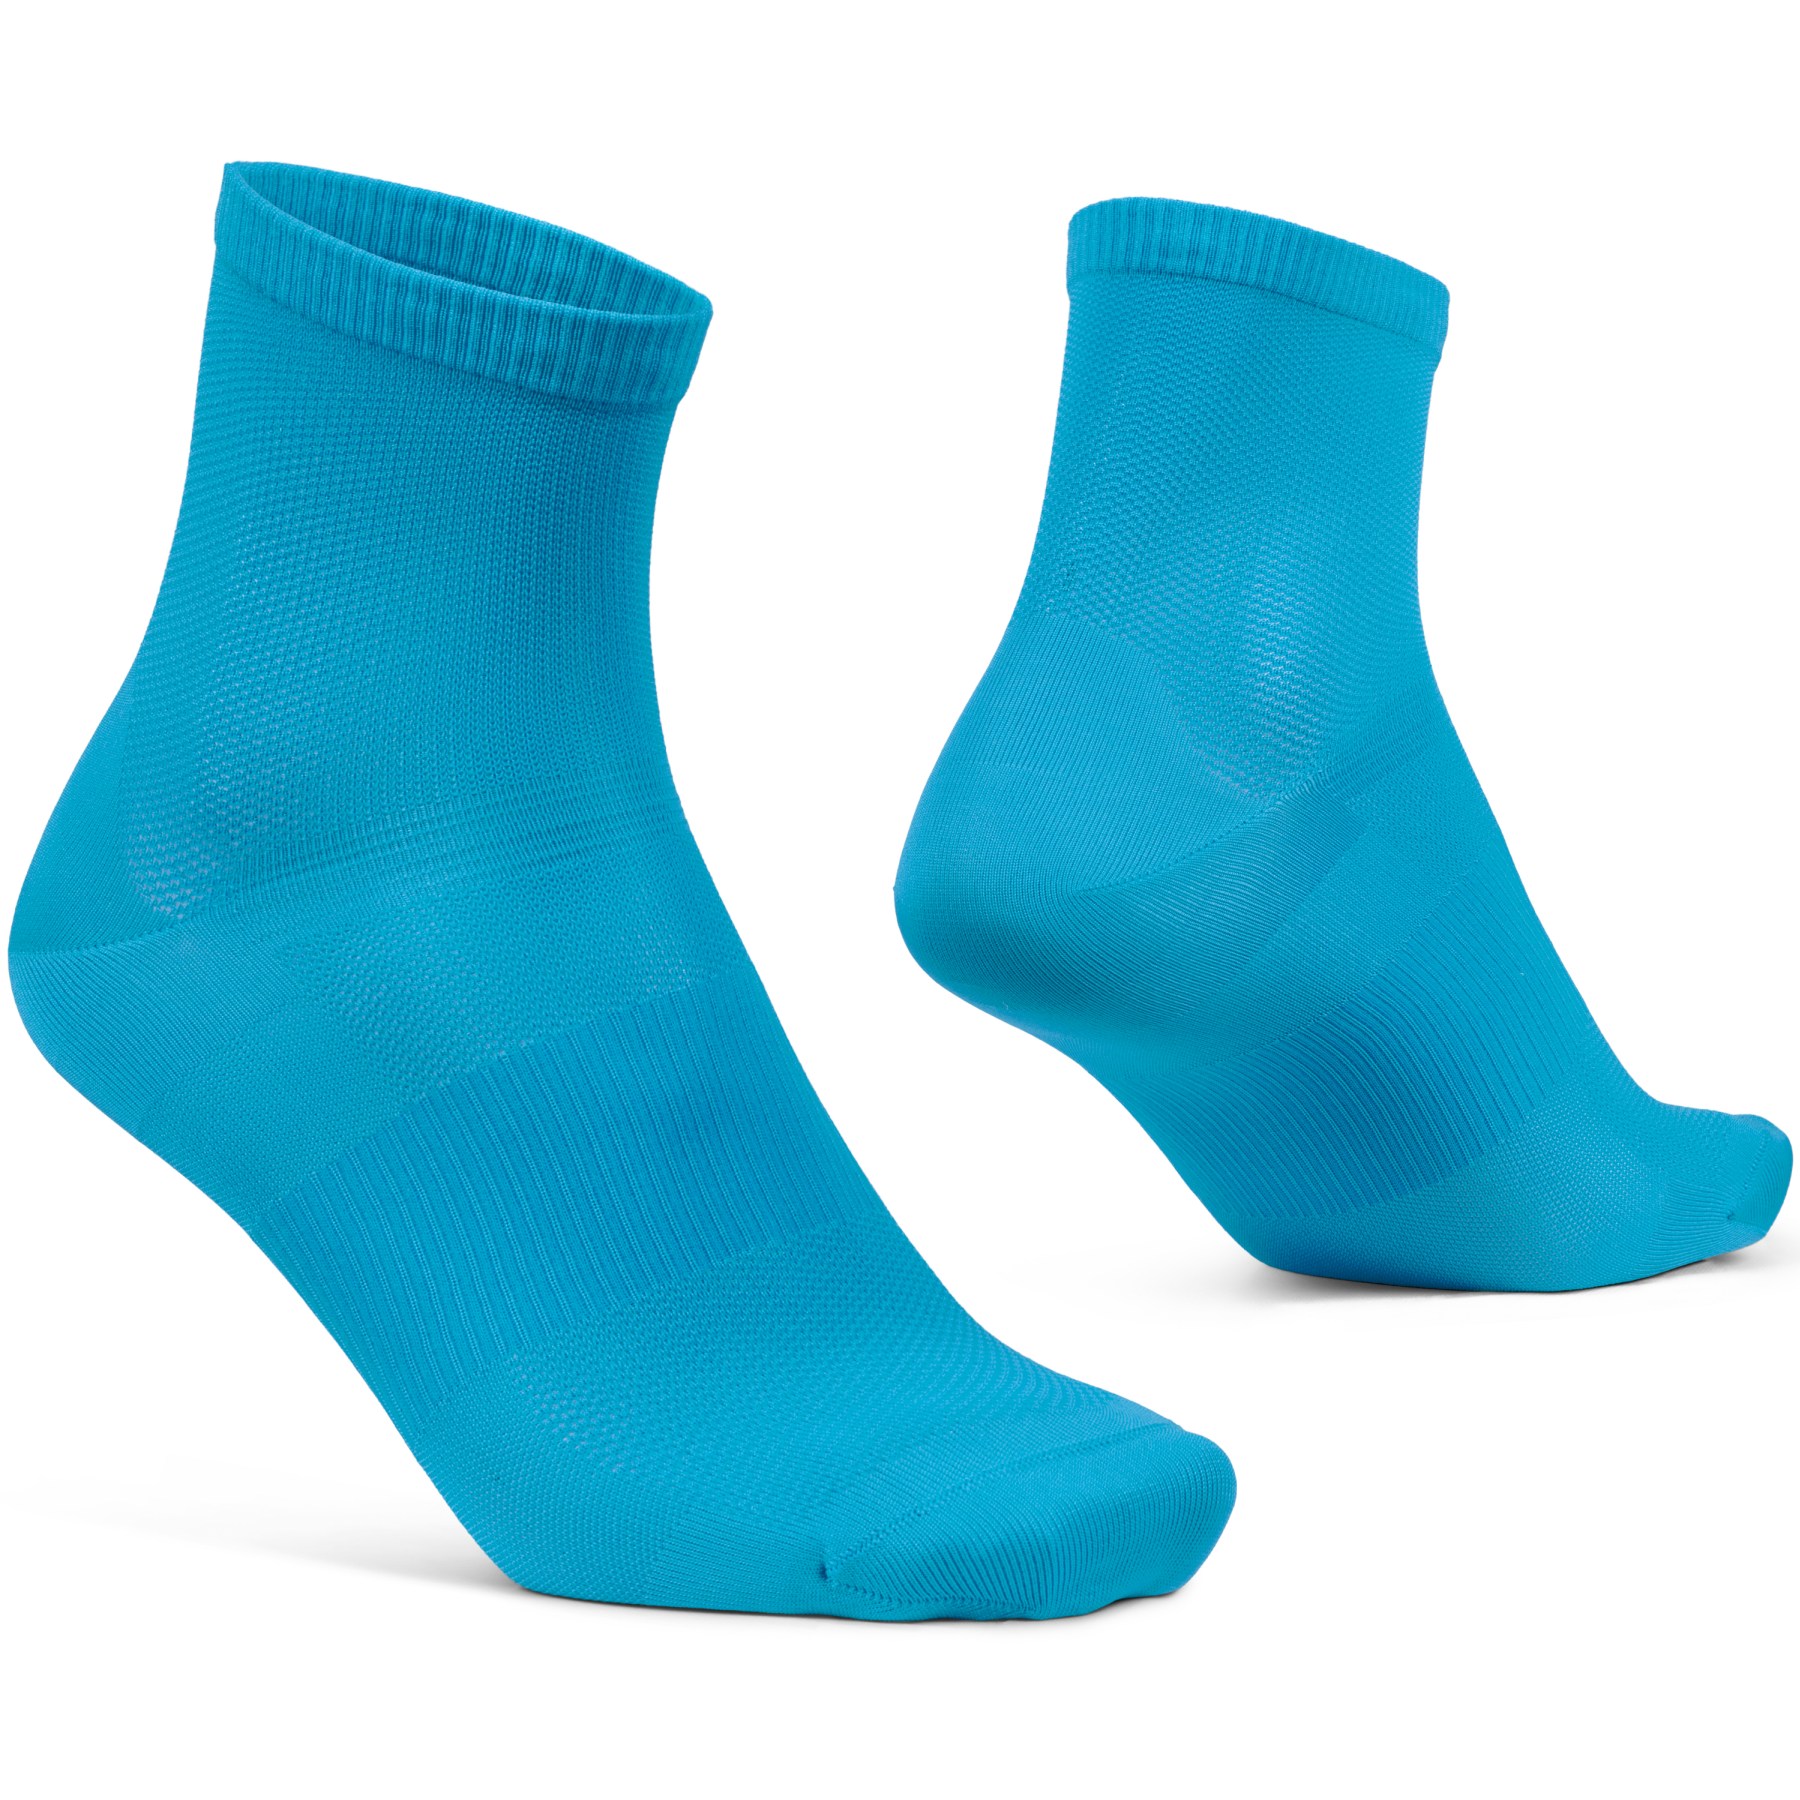 Produktbild von GripGrab Lightweight Airflow Short Socken - Blau